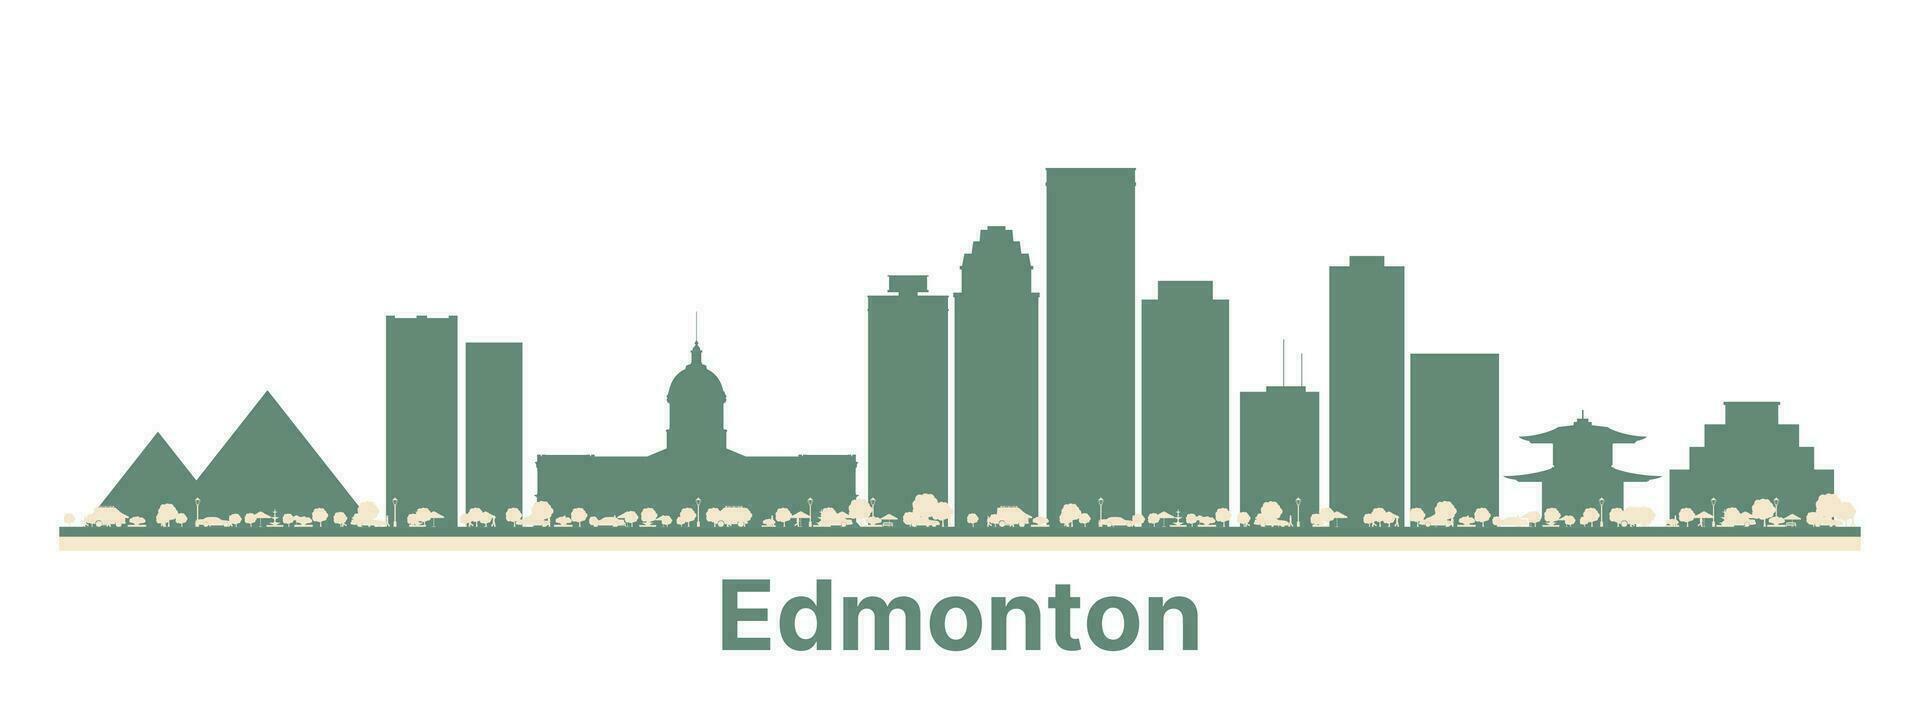 abstrakt edmonton Kanada Stadt Horizont mit Farbe Gebäude. vektor